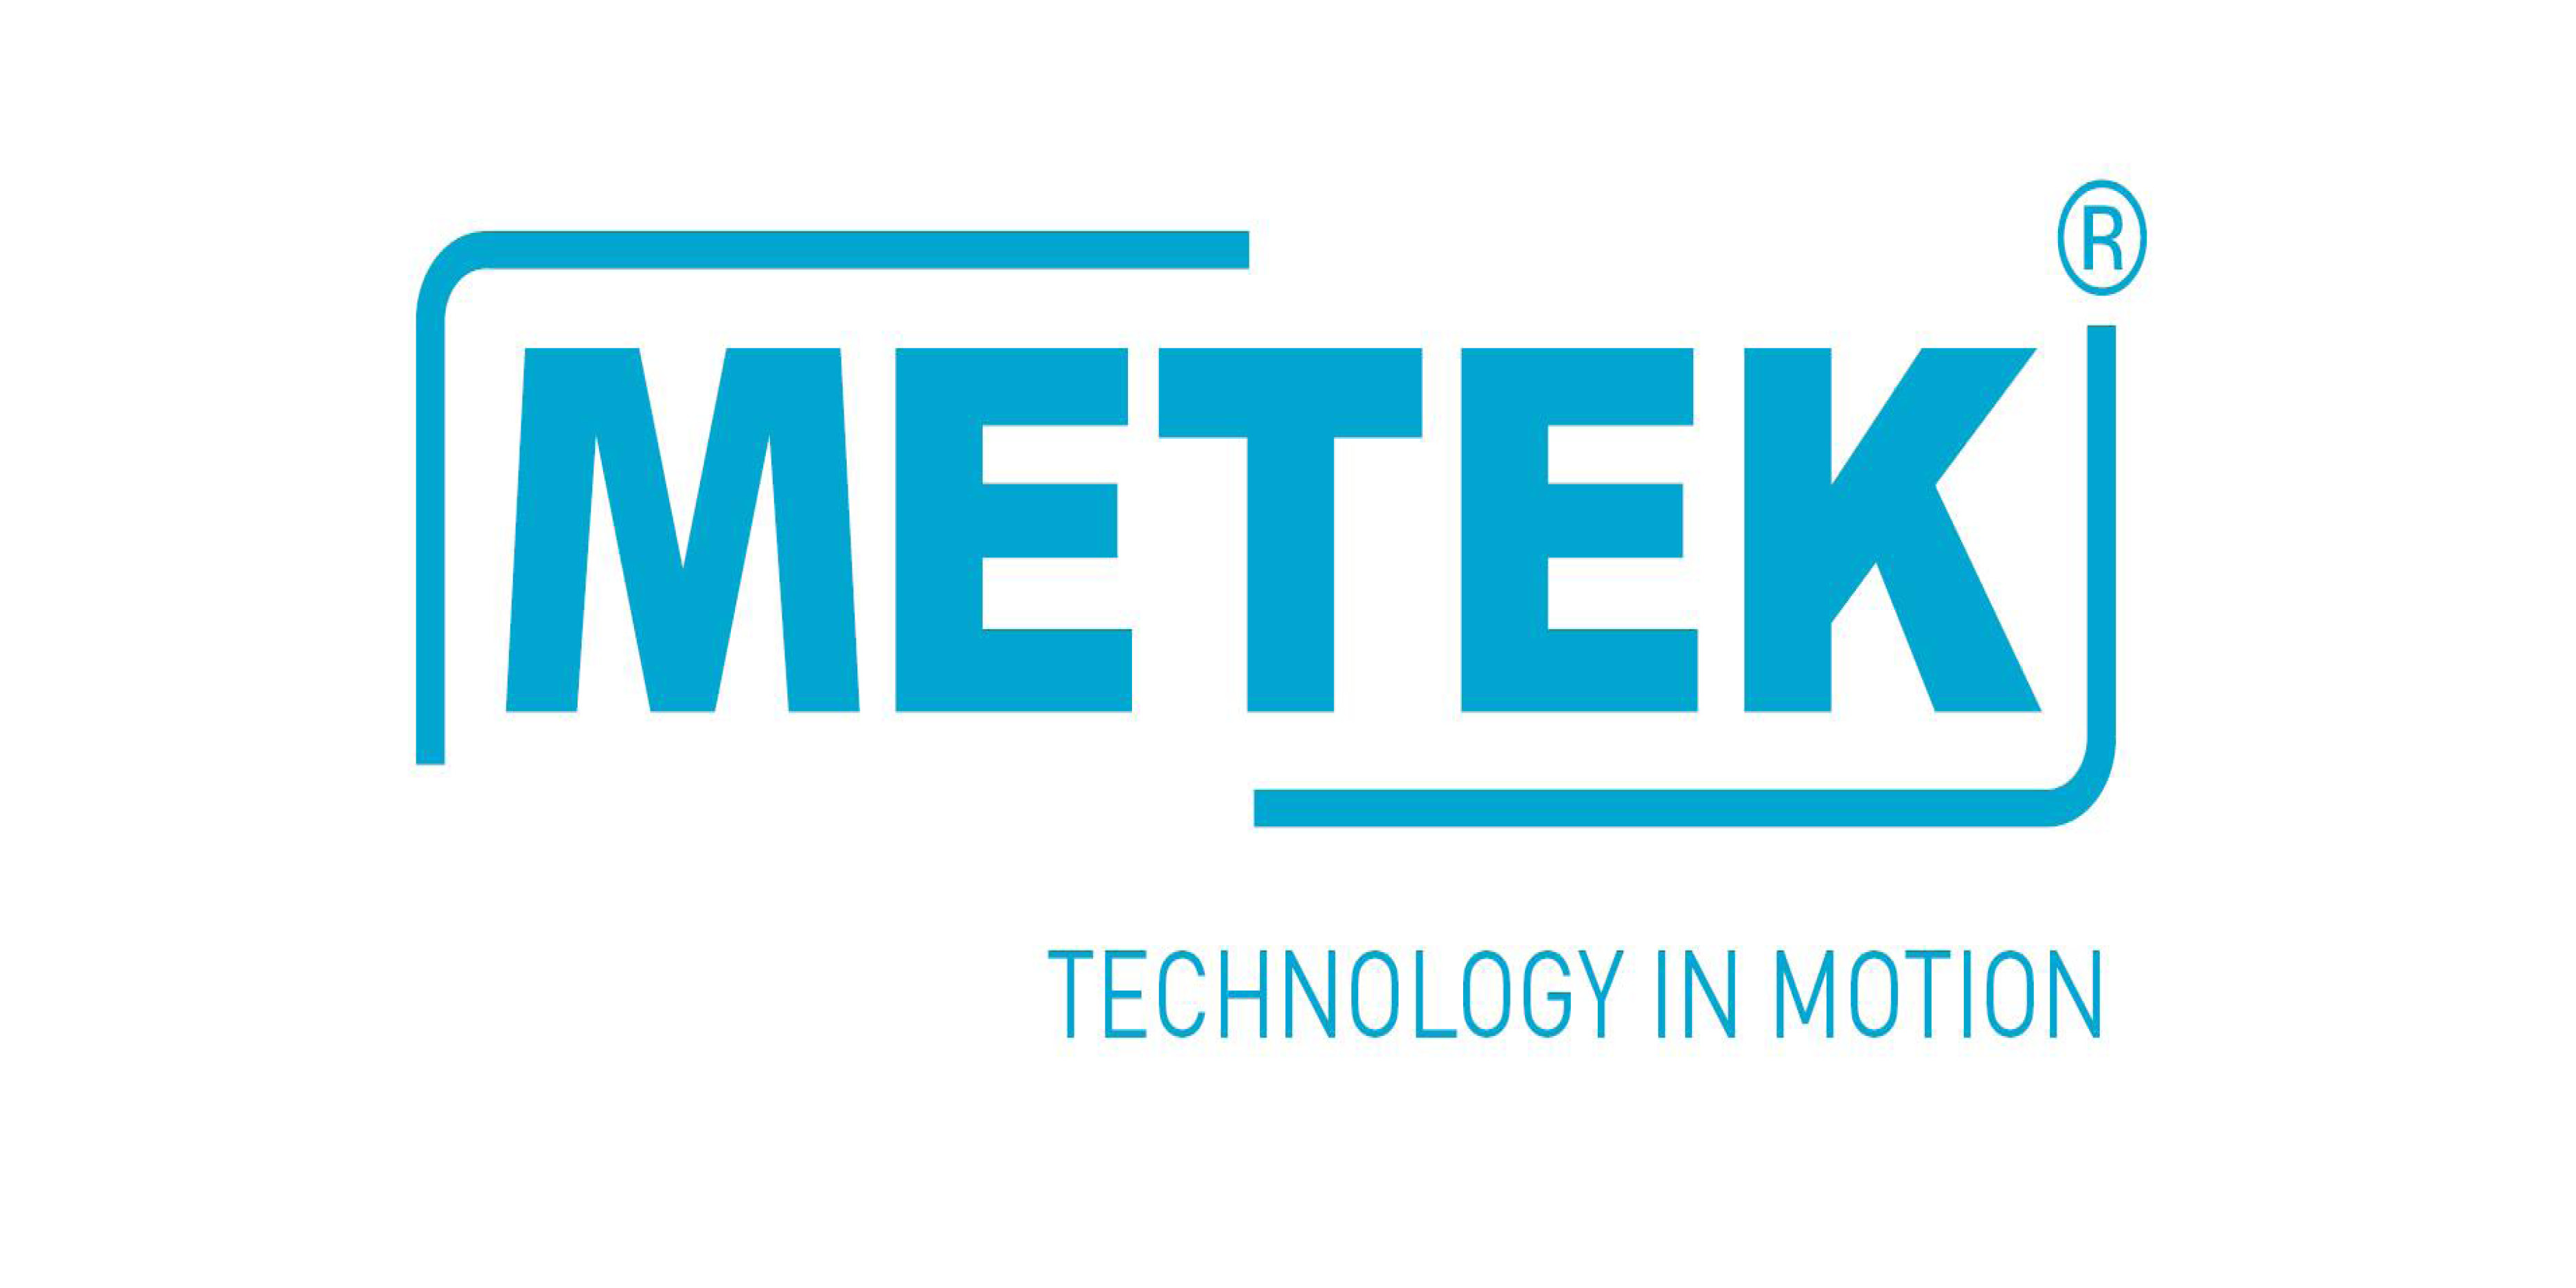 Metek GmbH